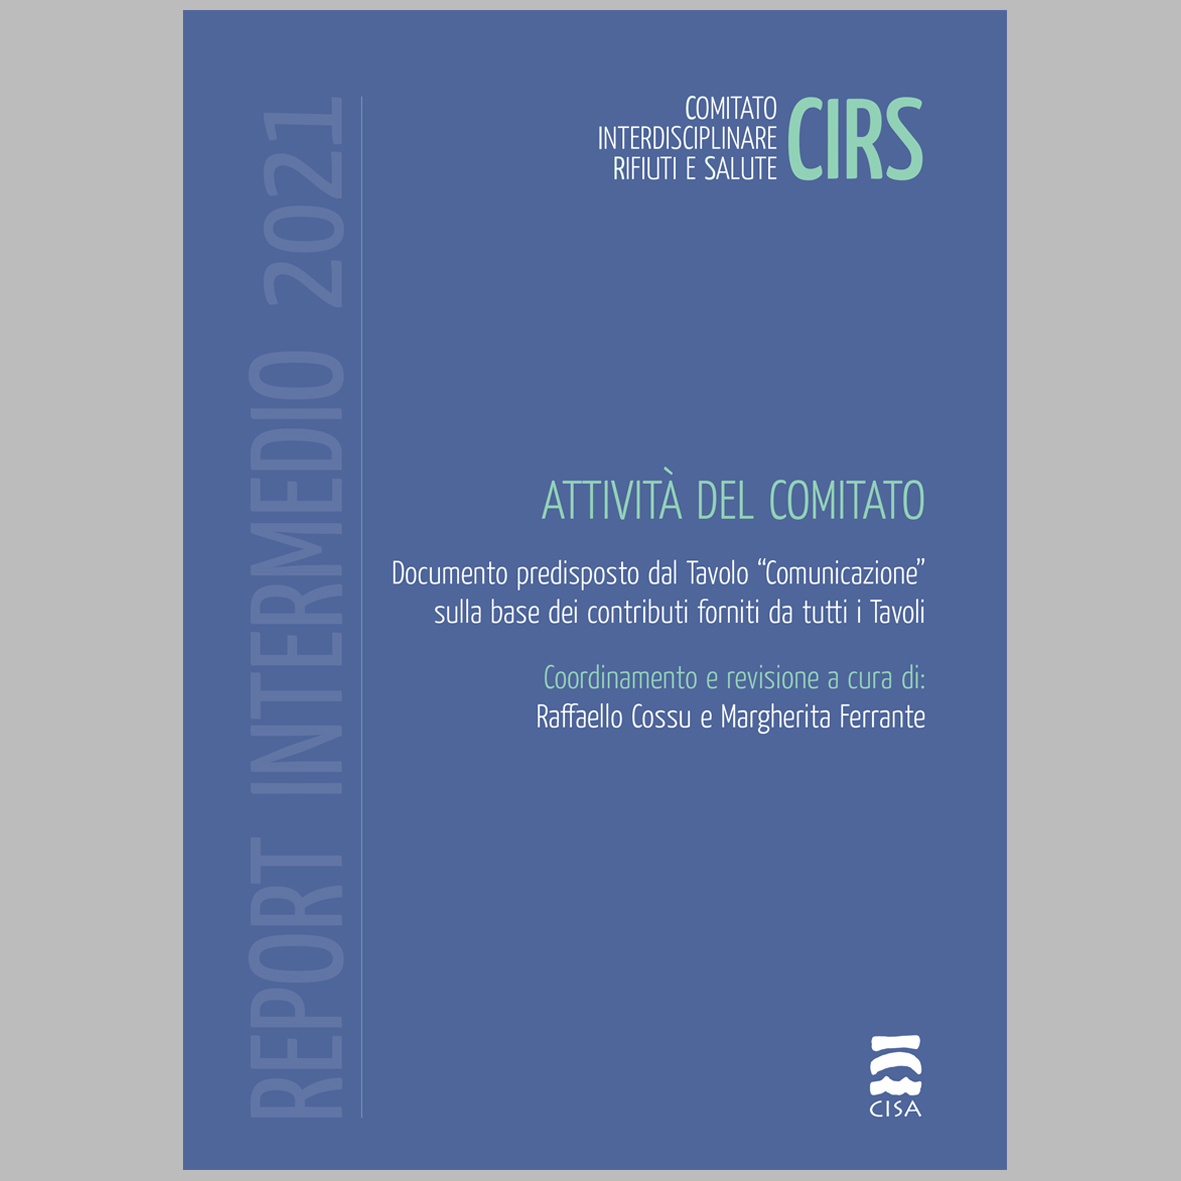 CIRS – RAPPORTO INTERMEDIO 2021 – Attività del Comitato Interdisciplinare Rifiuti e Salute